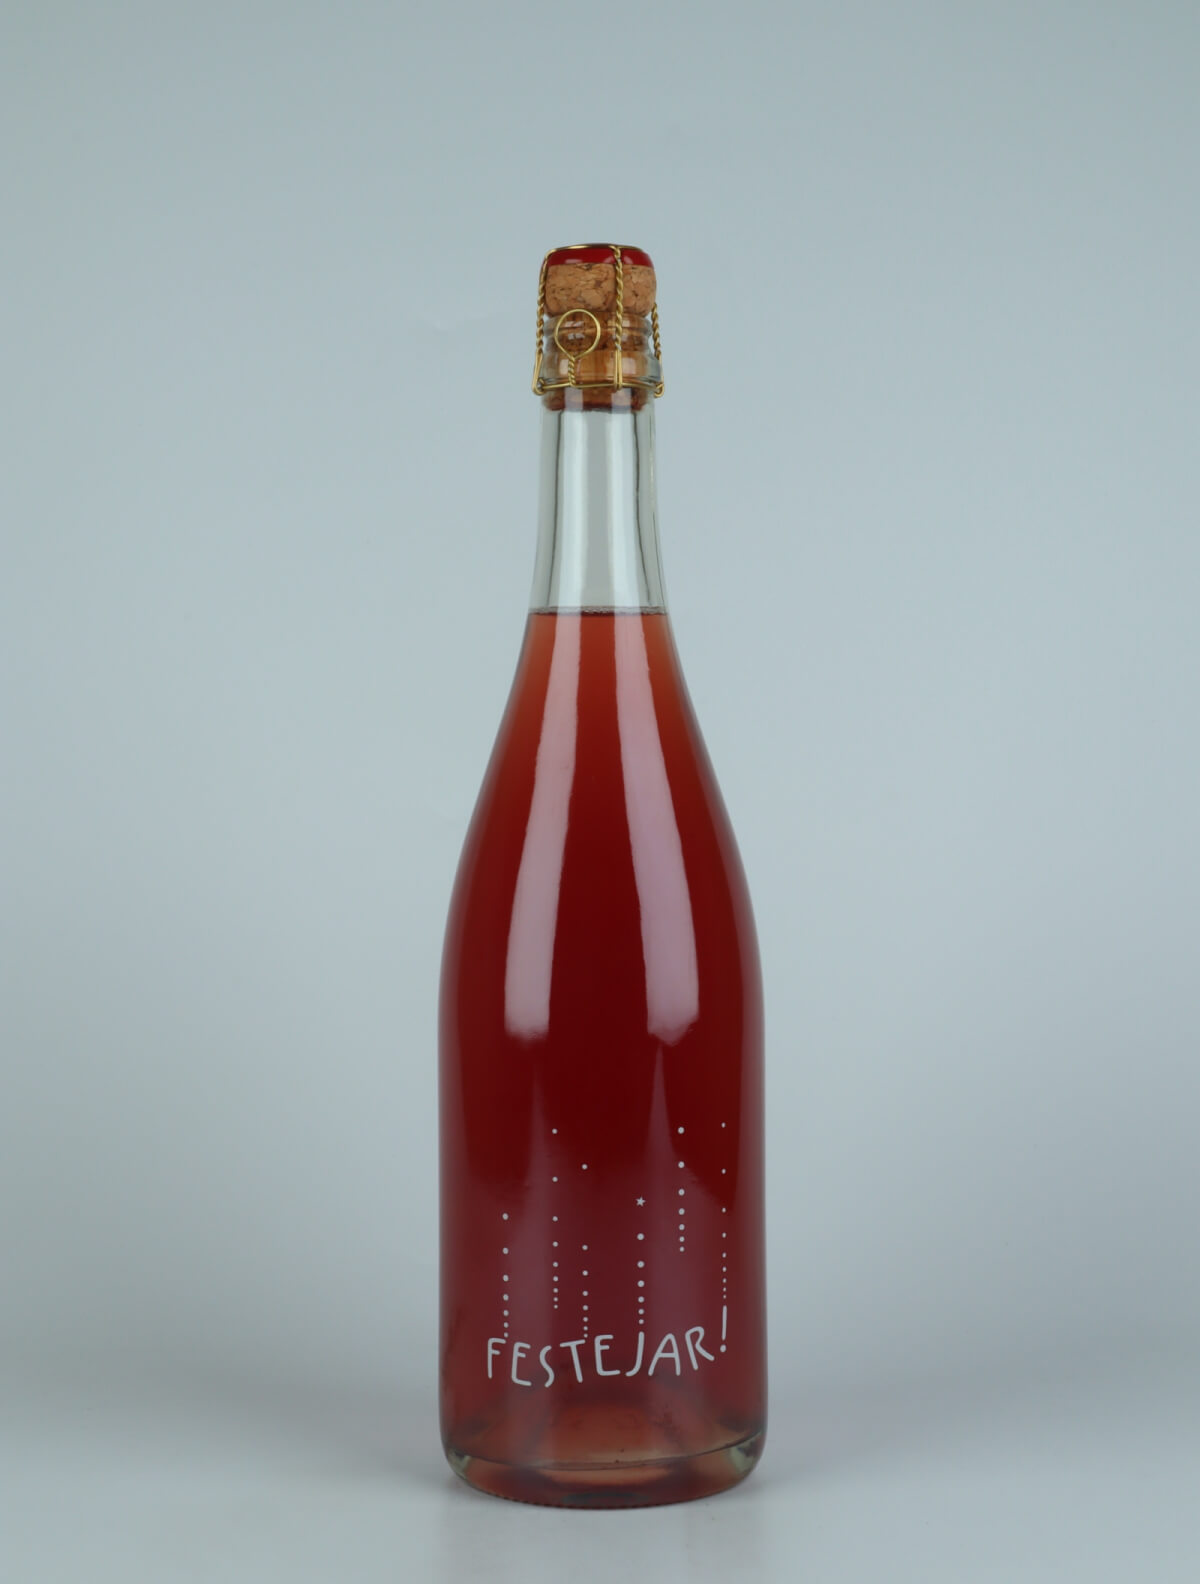 En flaske 2021 Festejar Rosé Mousserende fra Patrick Bouju, Auvergne i Frankrig